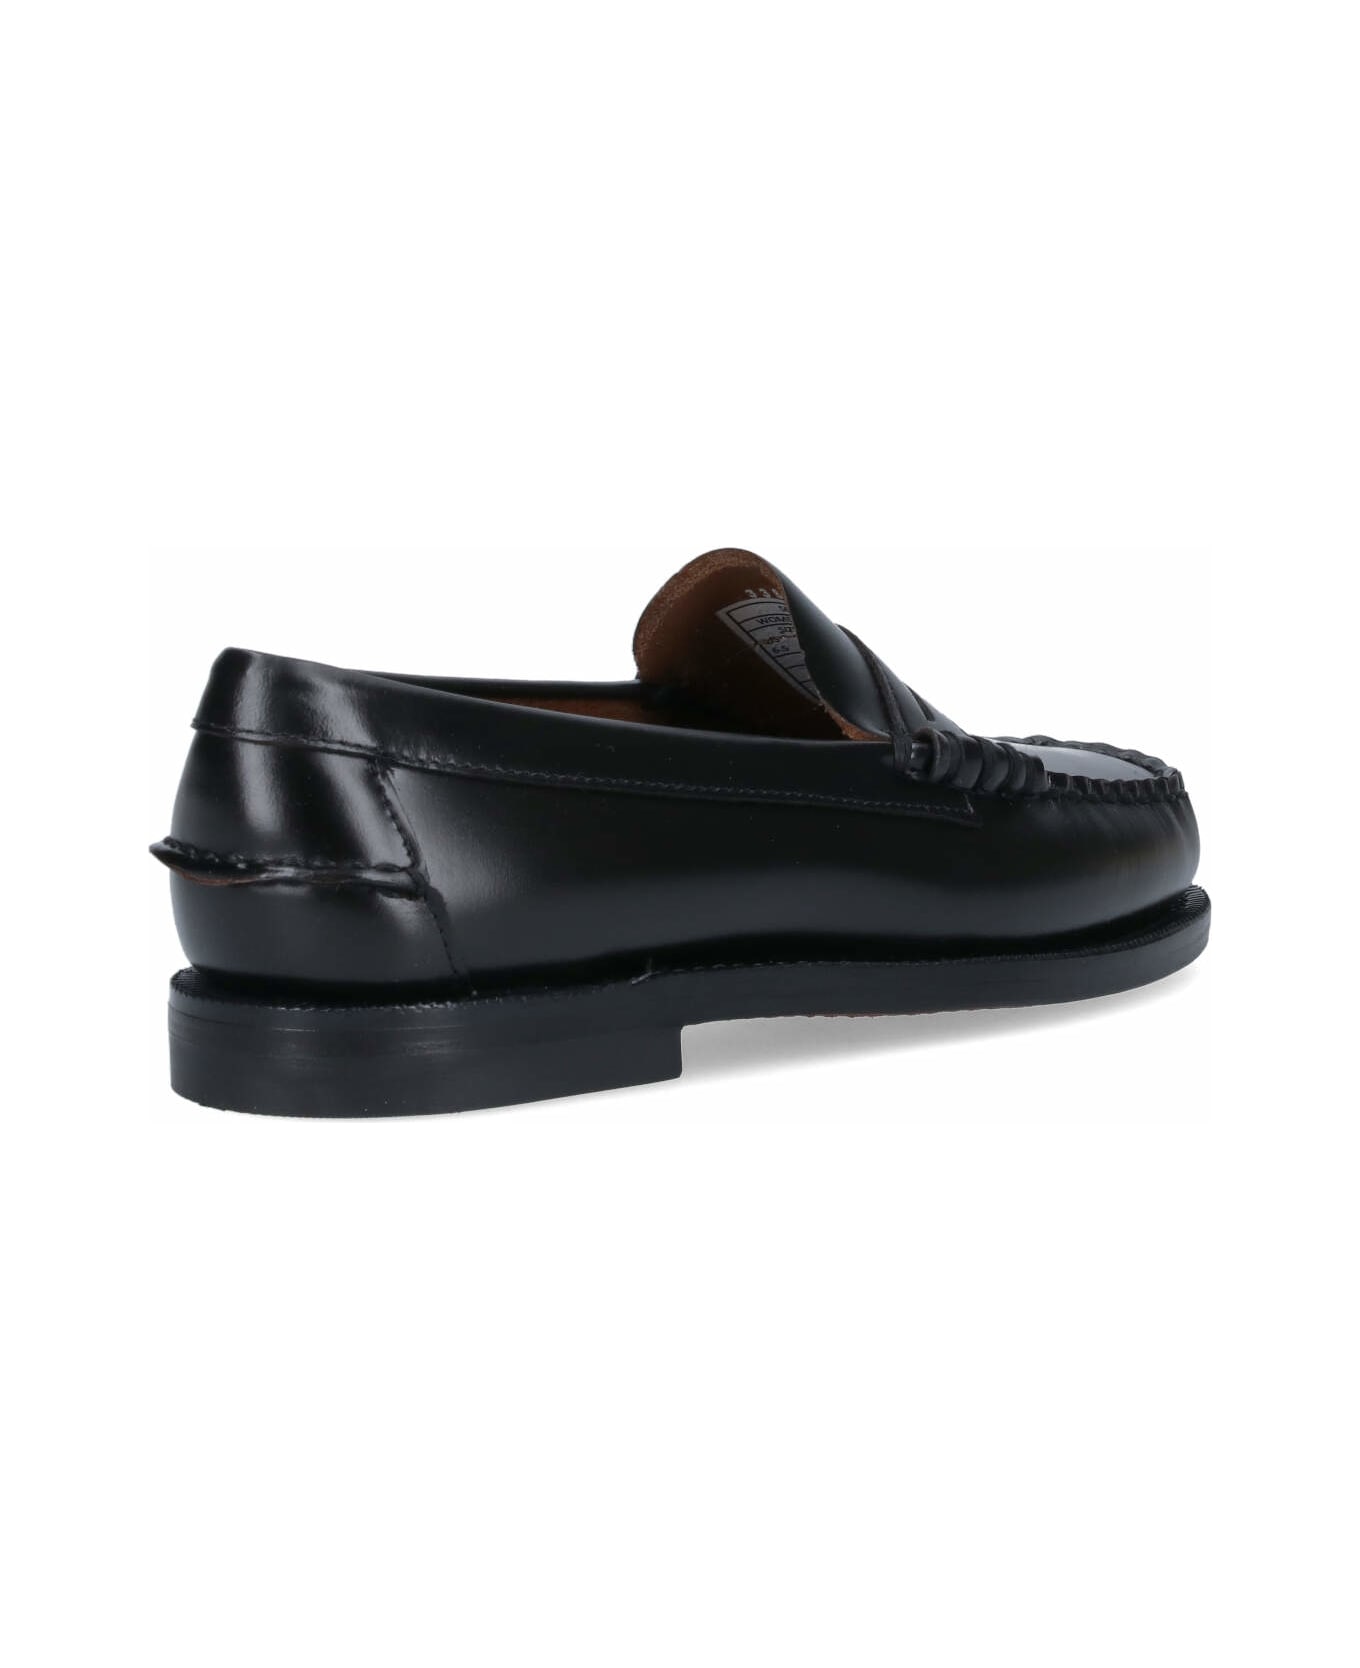 Sebago 'classic Dan' Loafers - Black  